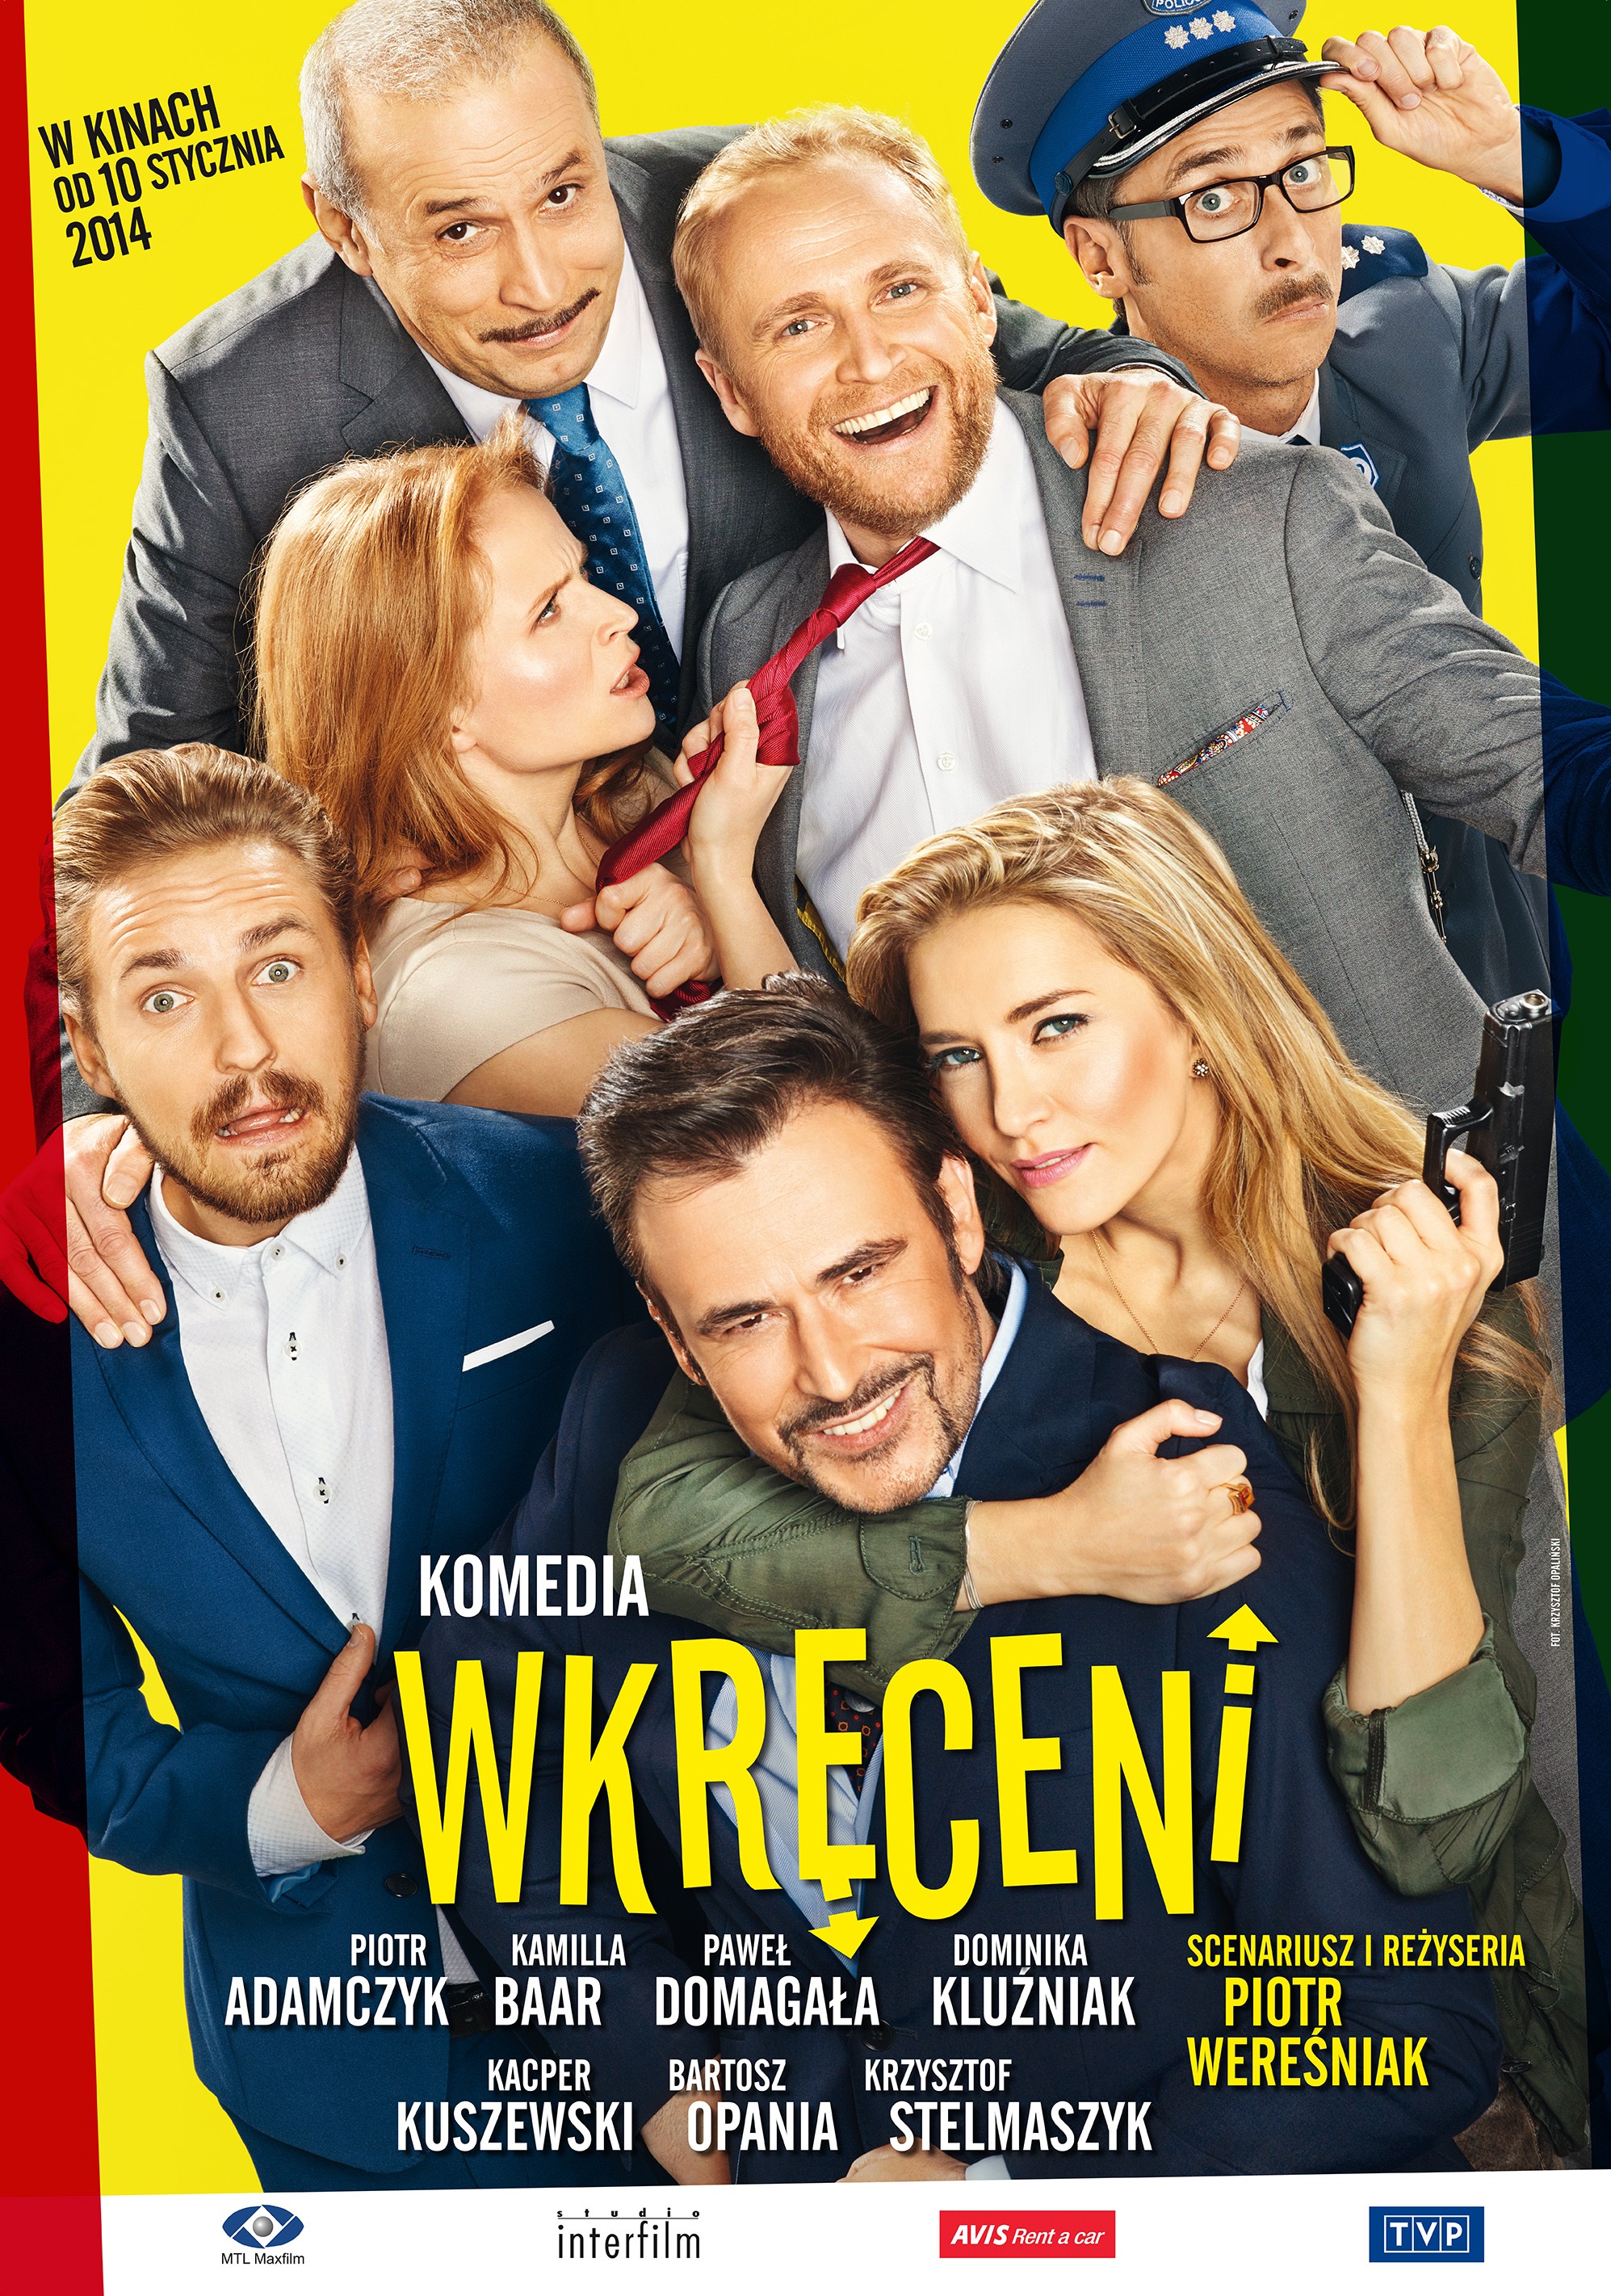 Mega Sized Movie Poster Image for Wkreceni 